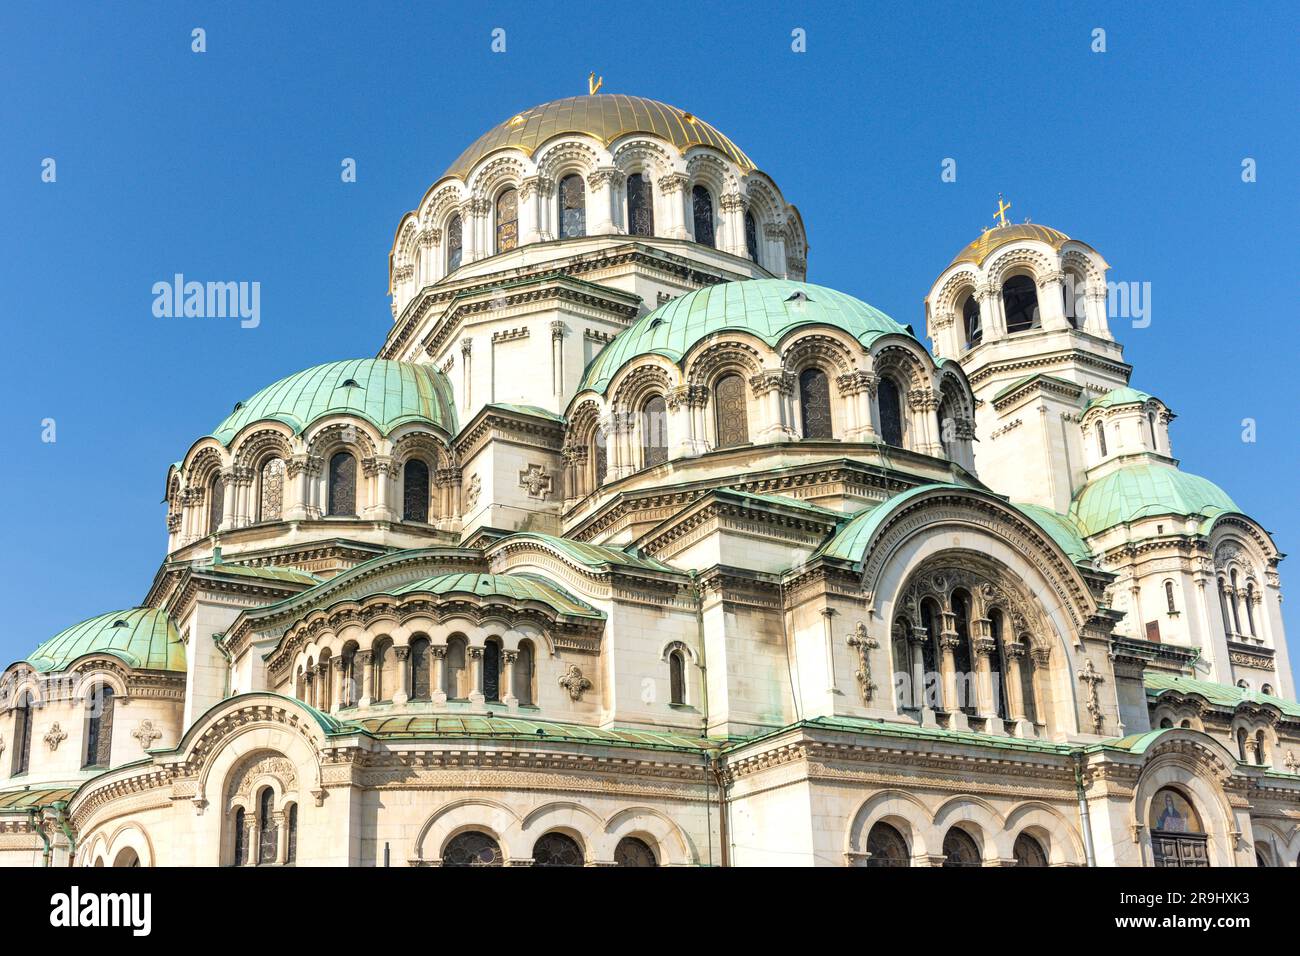 St. Alexander Nevsky Cathedral, St. Alexander Nevsky Square, City Centre, Sofia, Republic of Bulgaria Stock Photo